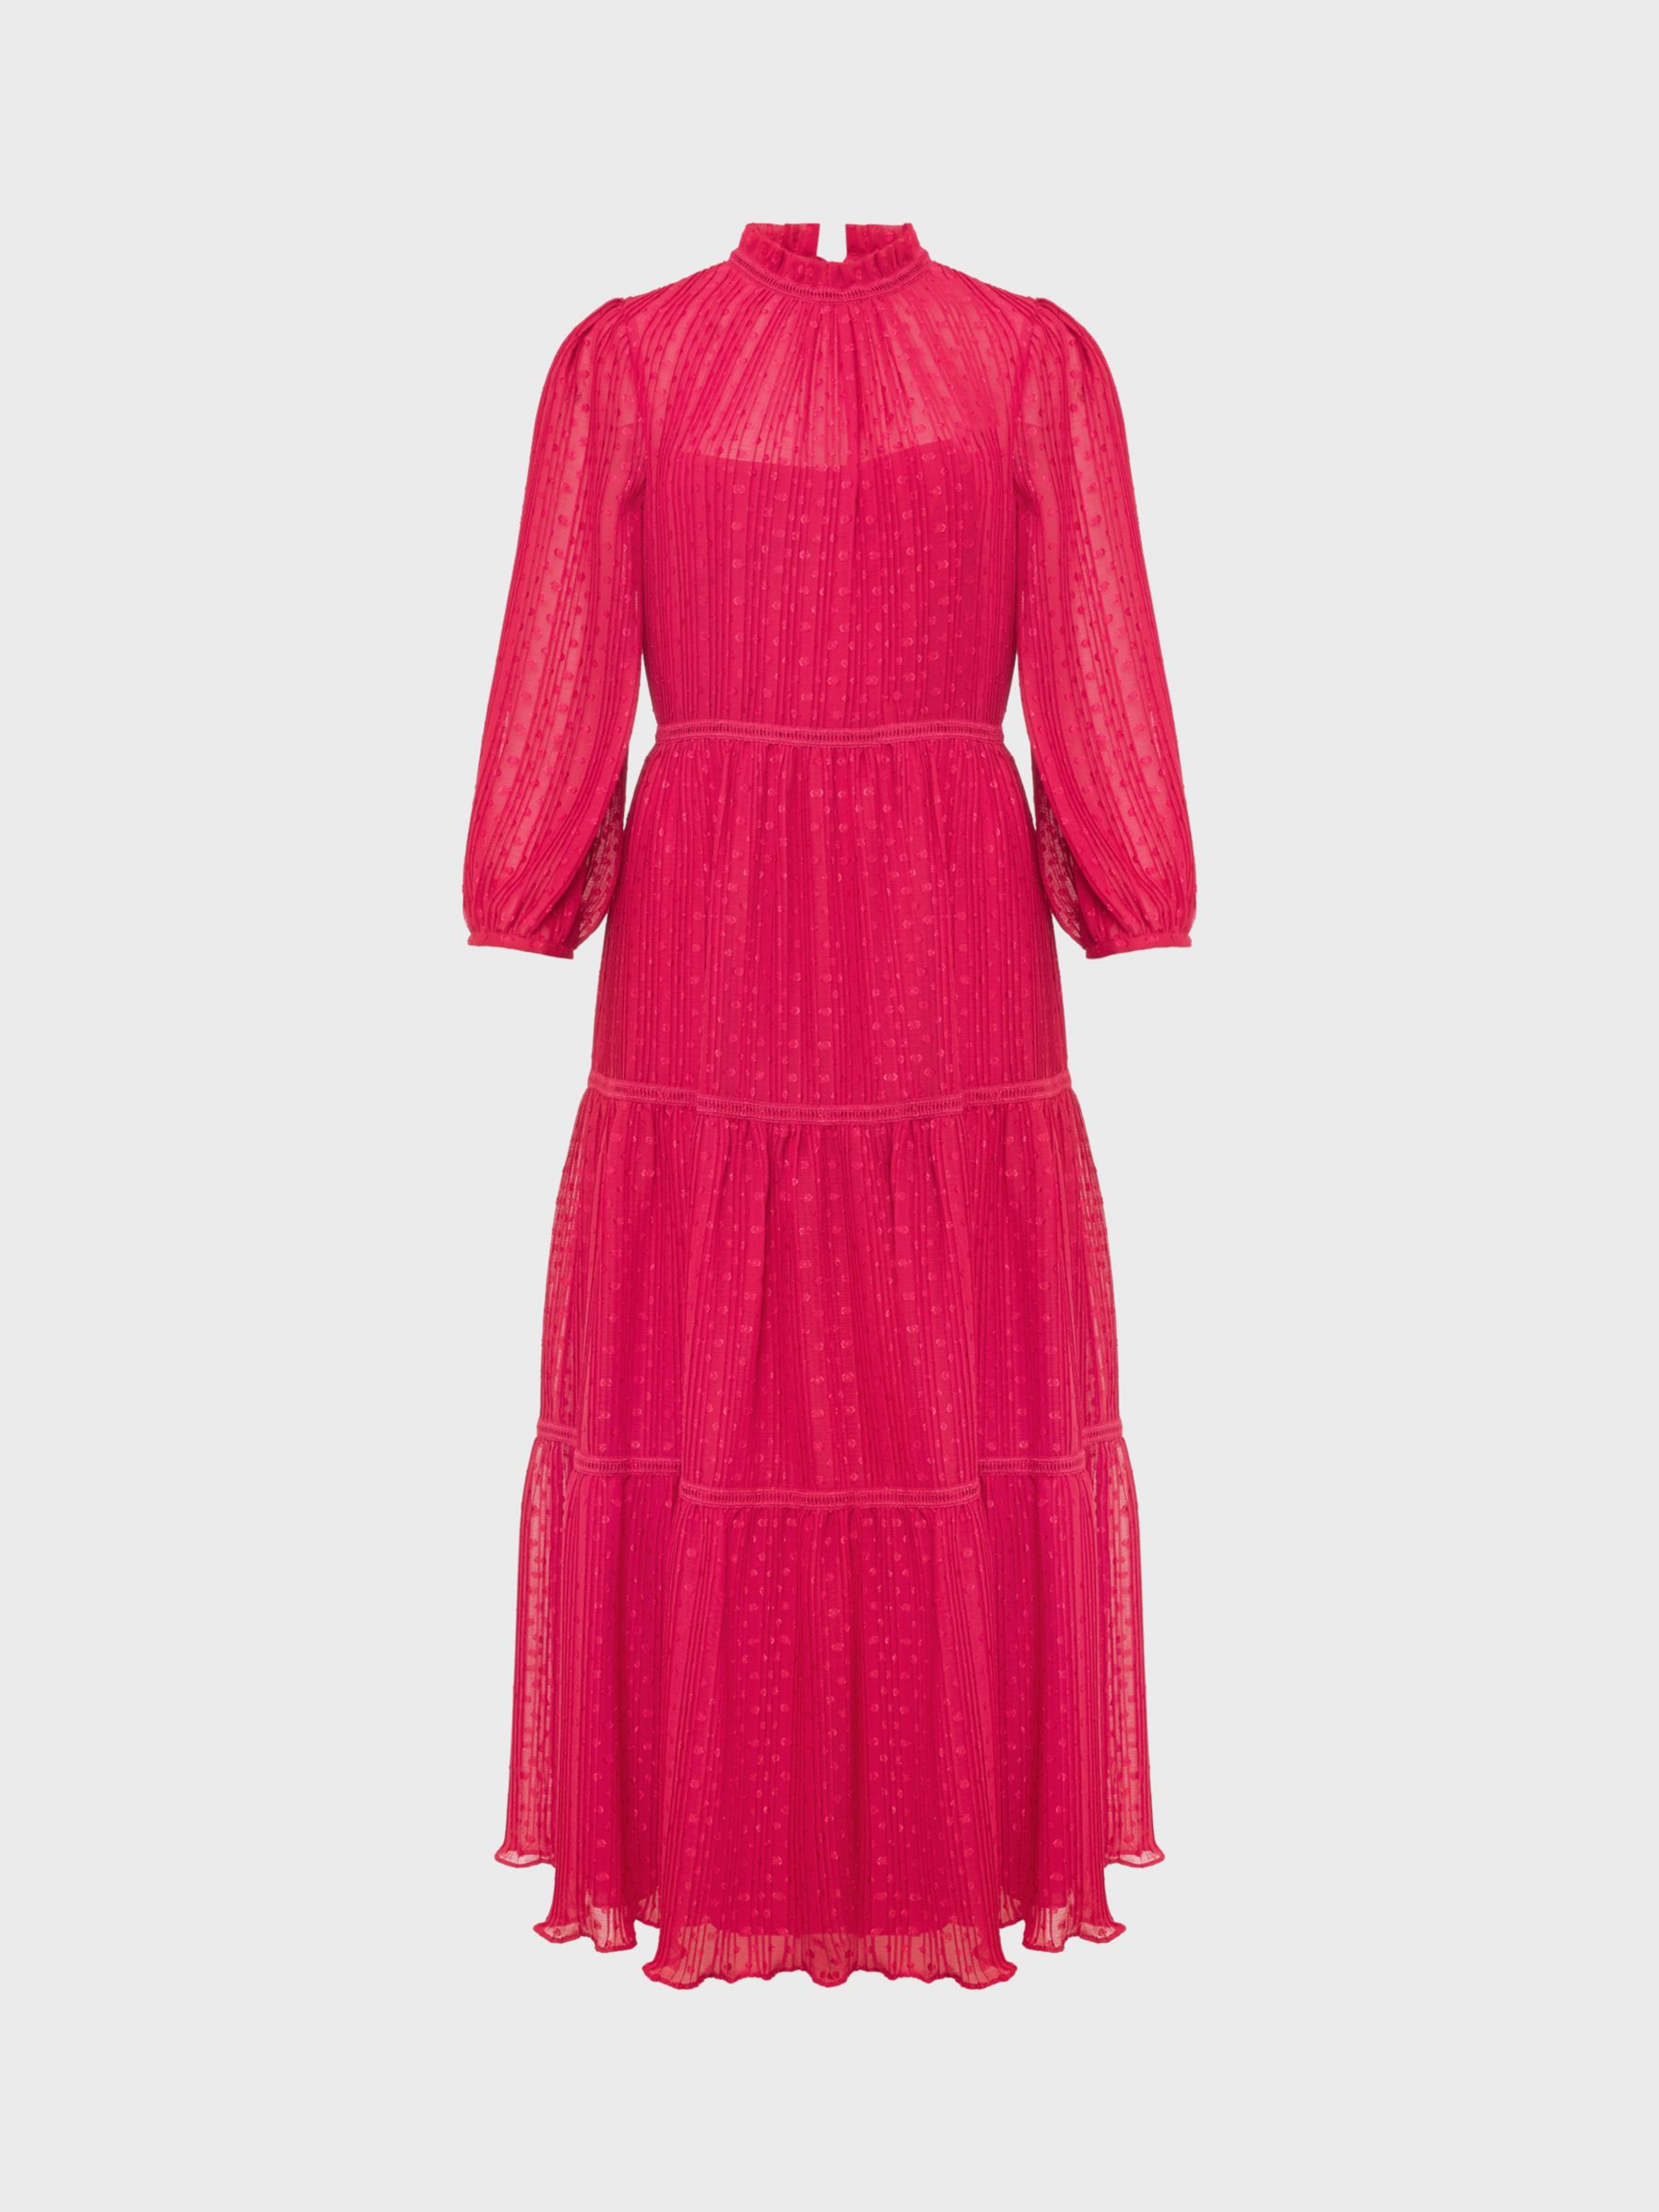 Hobbs Colette Textured Midi Dress, Cerise Pink, 6